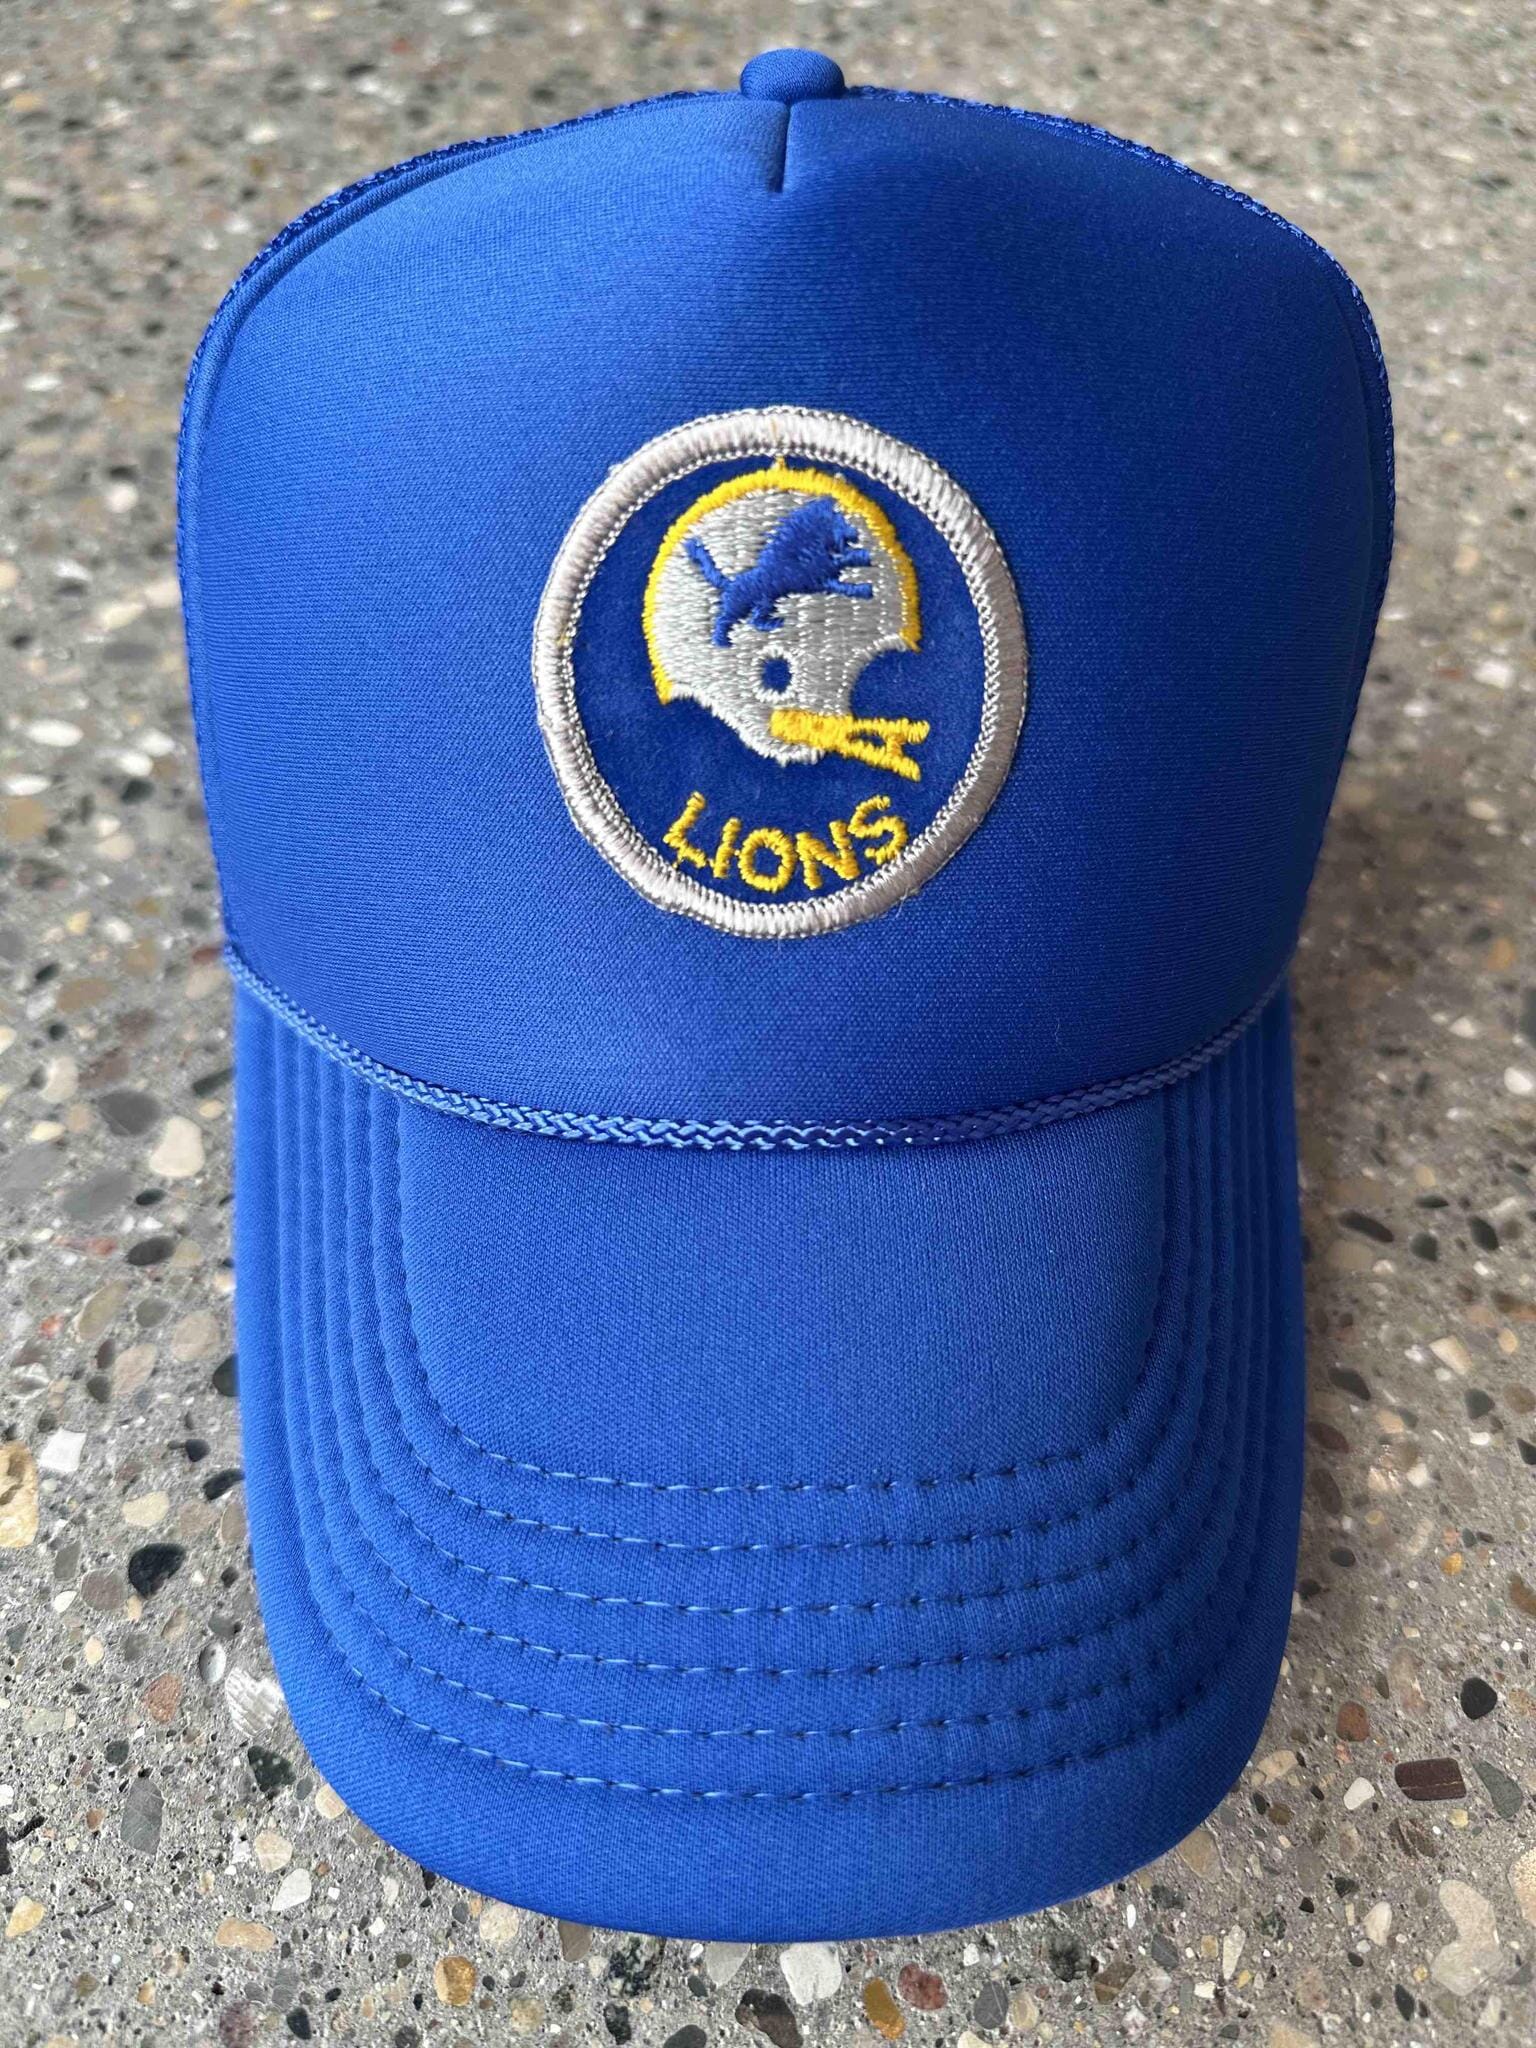 retro detroit lions hat